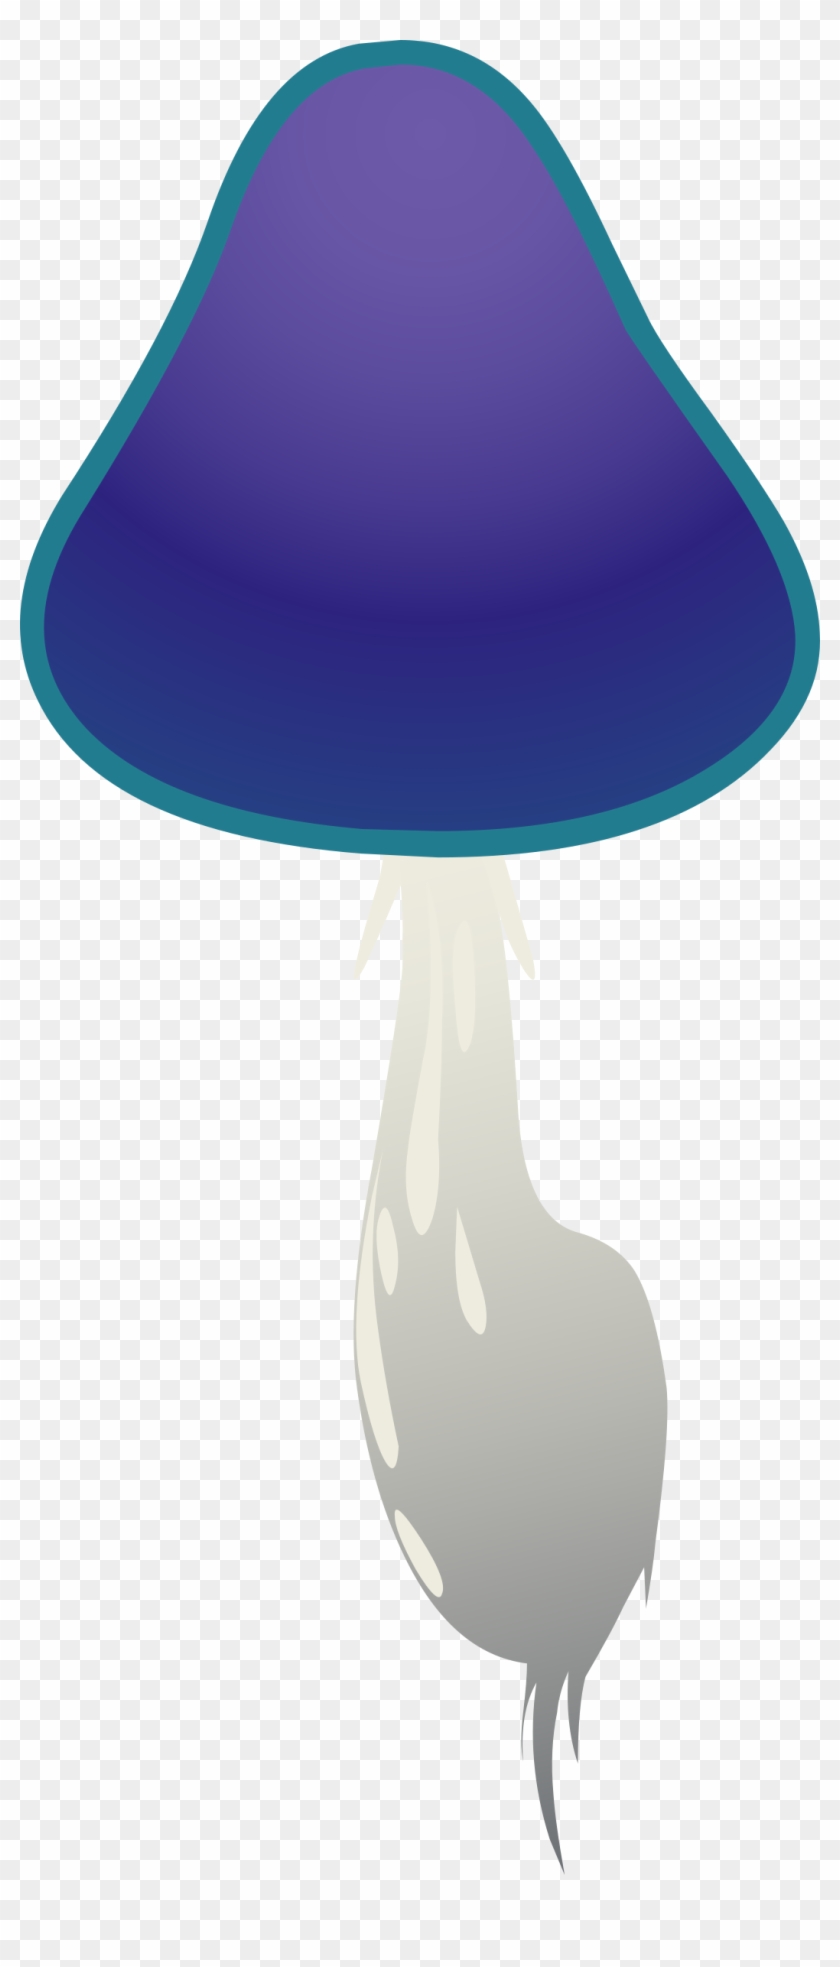 Big Image - Mushroom #223590